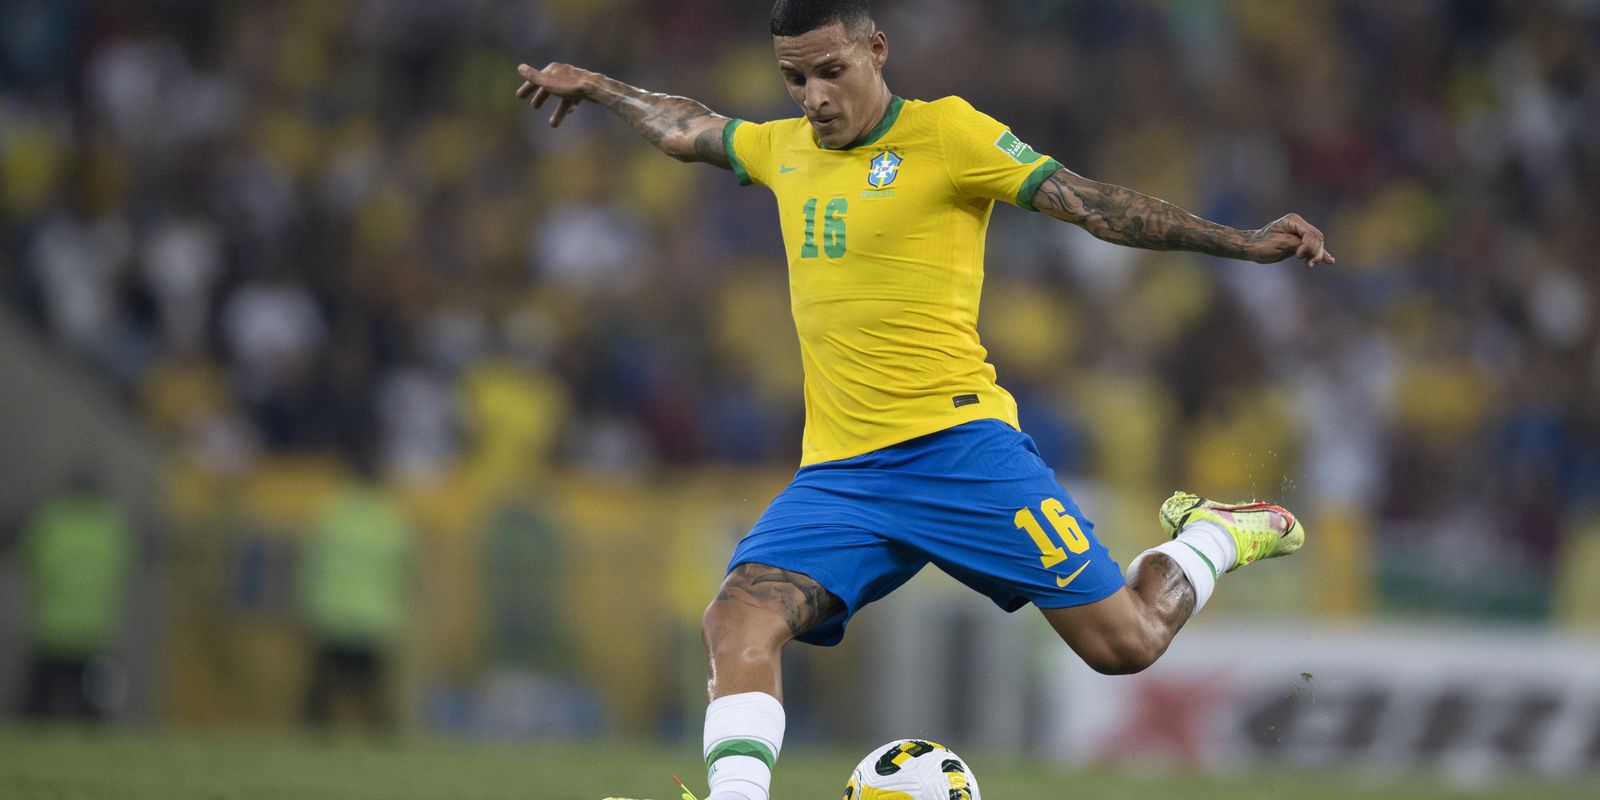 Os próximos jogos do Brasil - Confederação Brasileira de Futebol